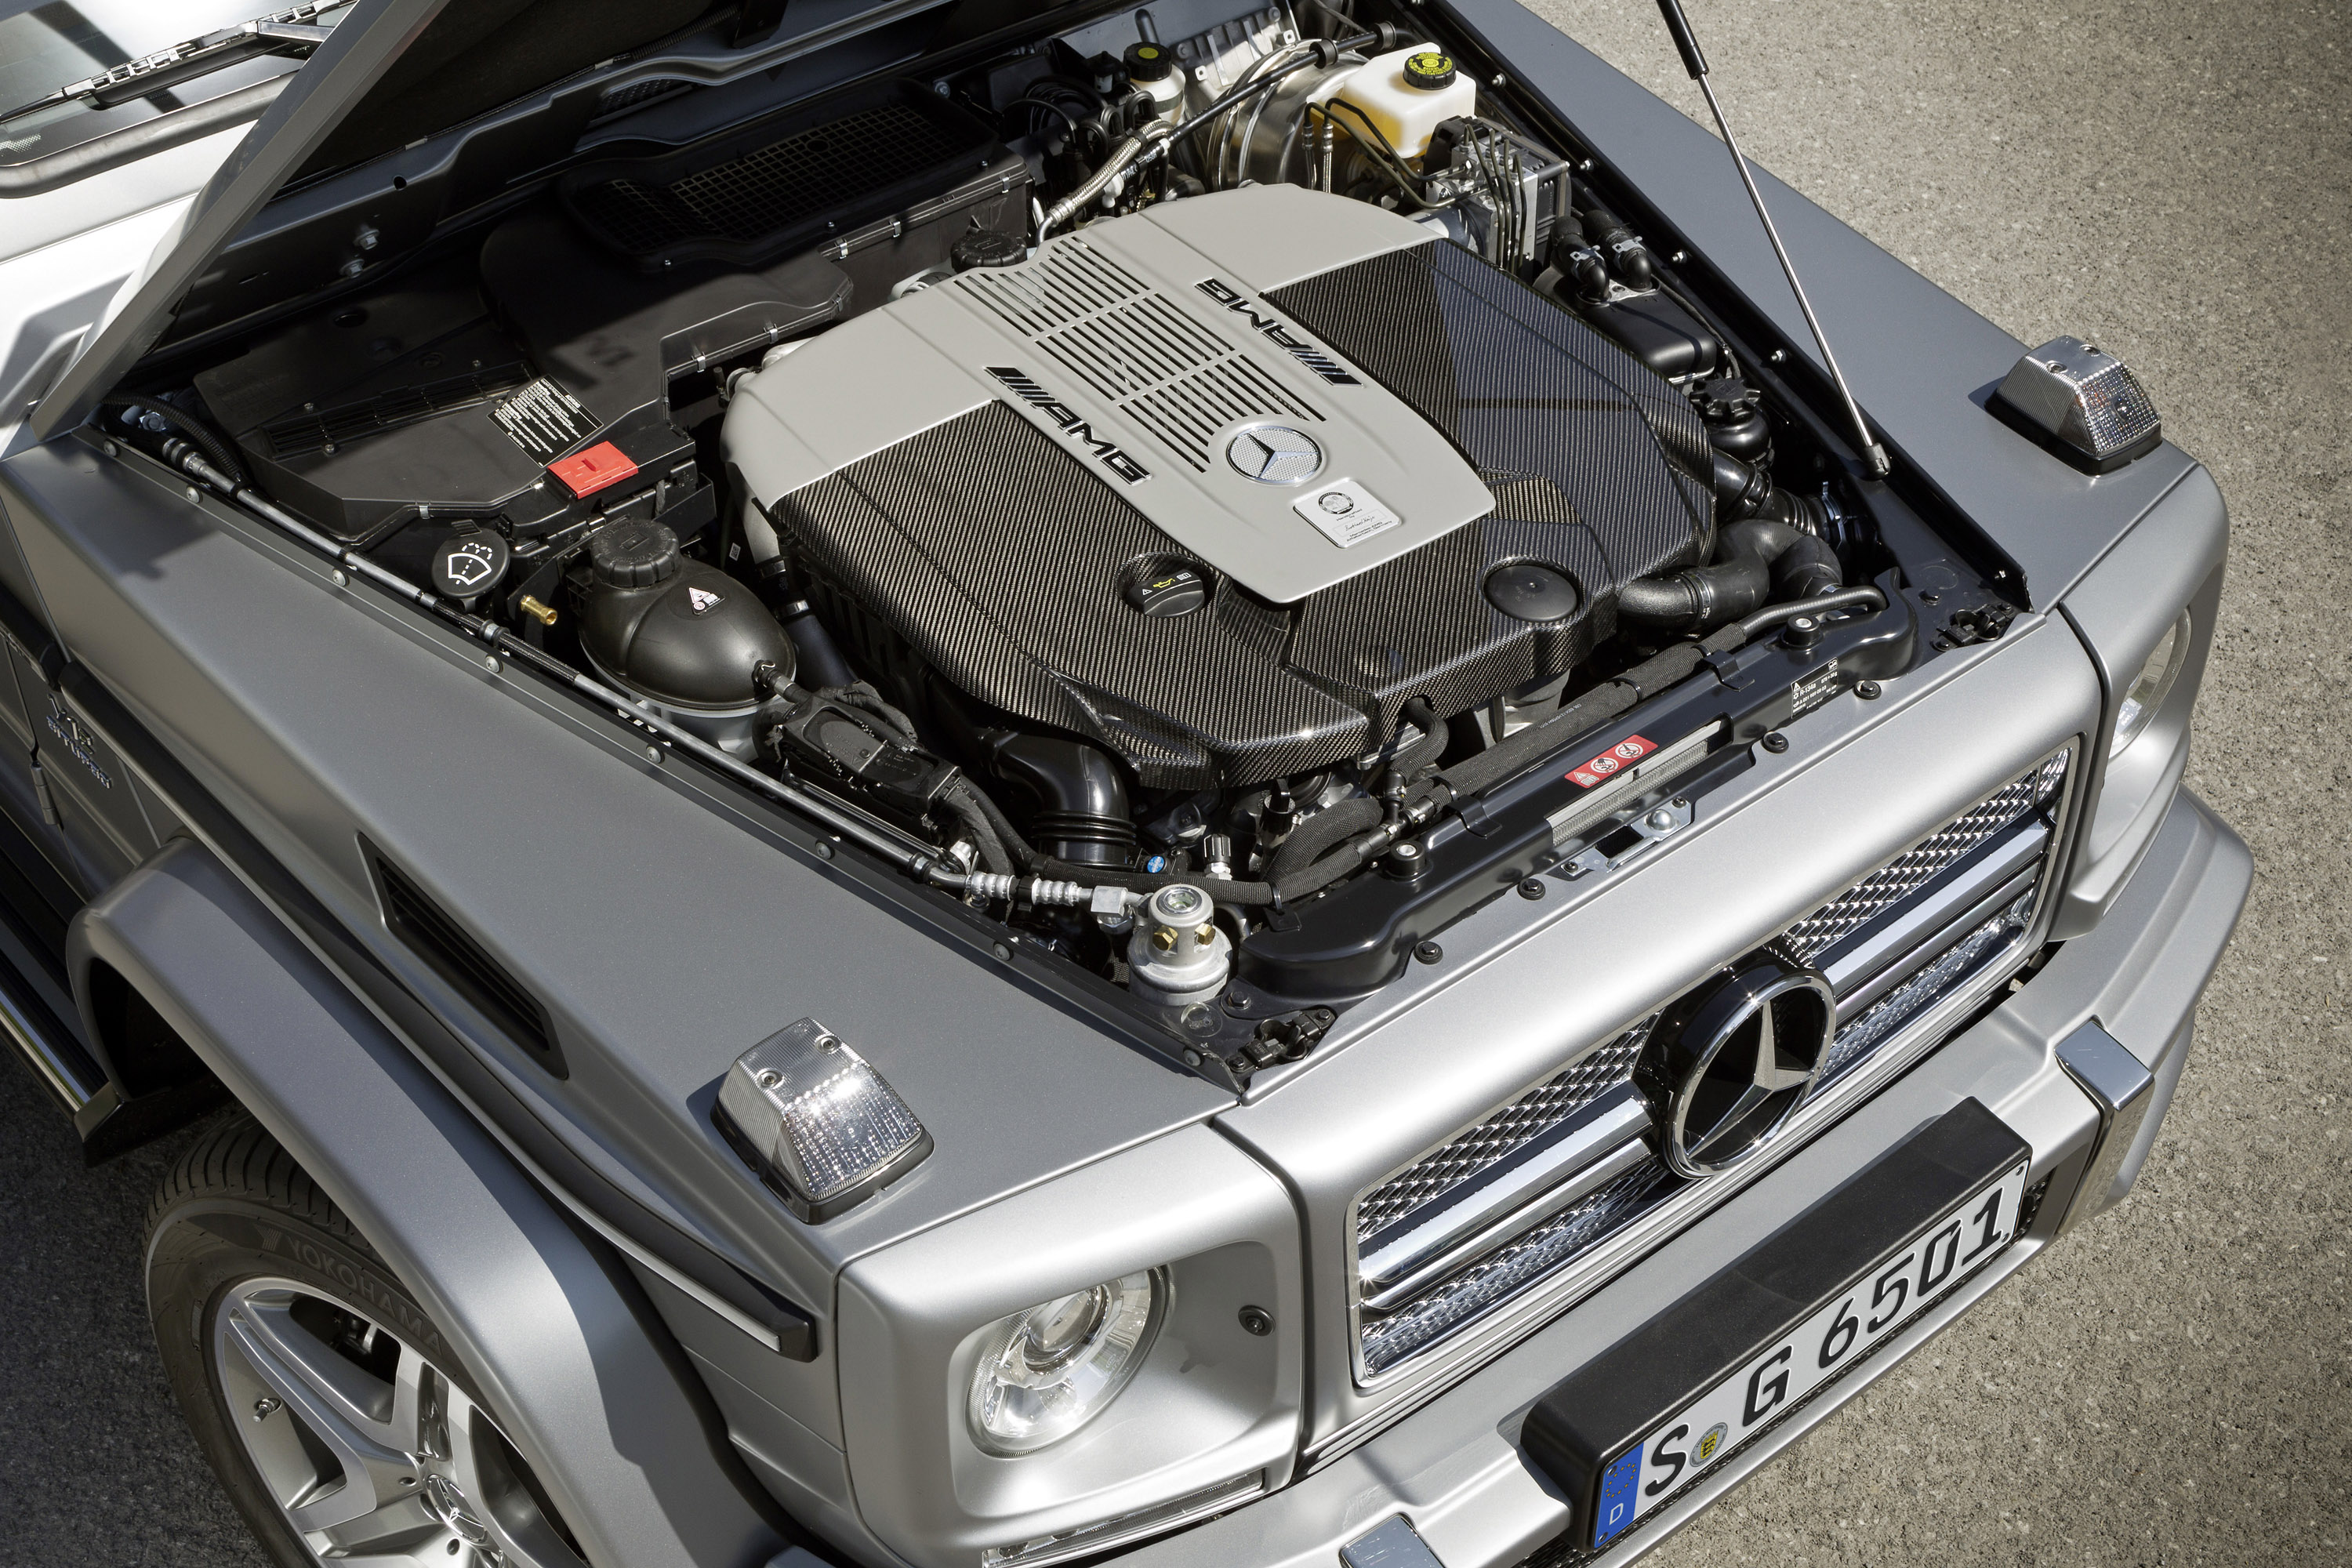 Мотор гелендваген. G65 AMG мотор. Двигатель Мерседес g 63 АМГ. Mercedes Benz g65 AMG v12 Biturbo. G65 AMG v12.